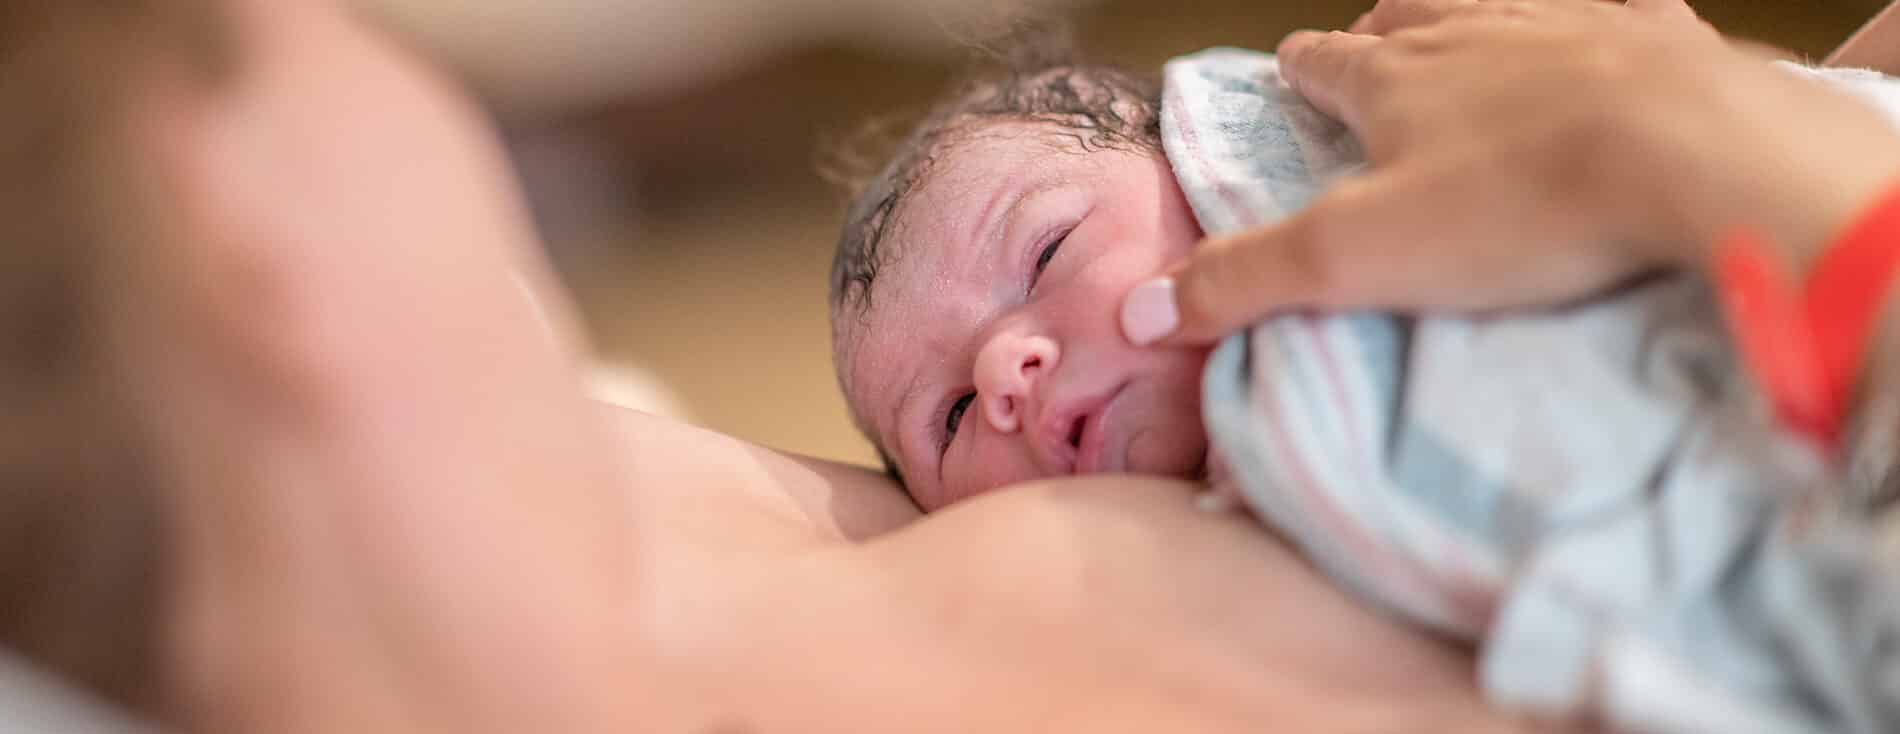 Imagem de um bebê recém-nascido na golden hour. Ele está sobre o peito da mãe, em contato pele a pele. Ambos estão se olhando. O bebê tem a pele clara e o cabelo escuro.